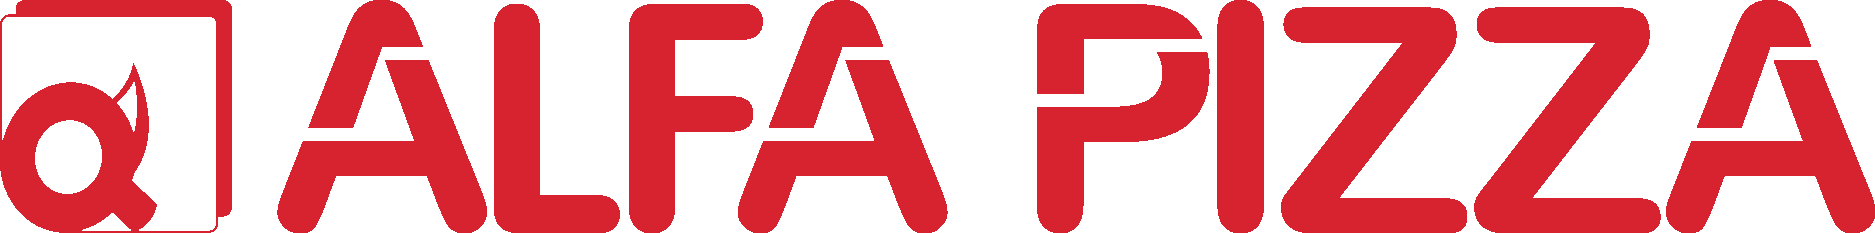 Alfa Pizza Logo Vector